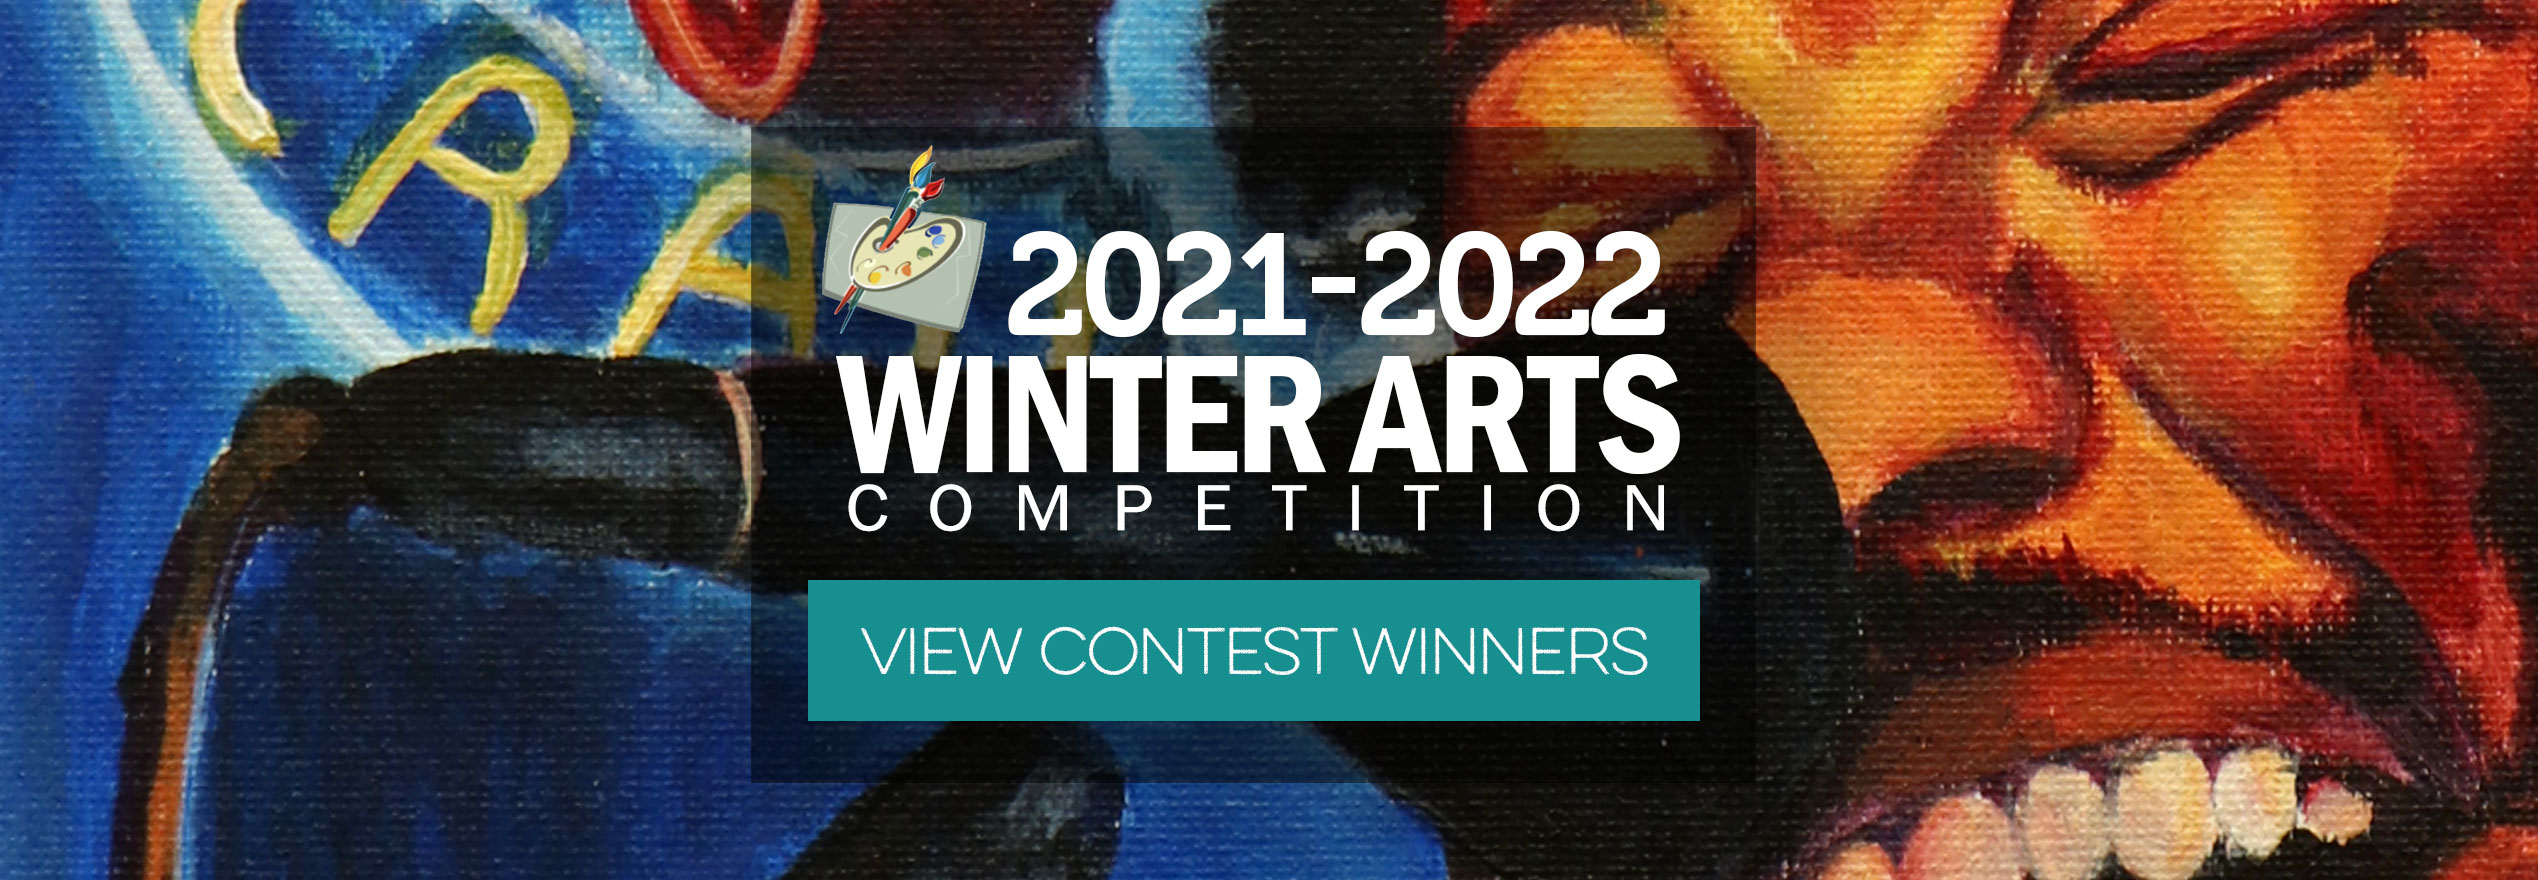 Winter Arts Winners 2021-2022